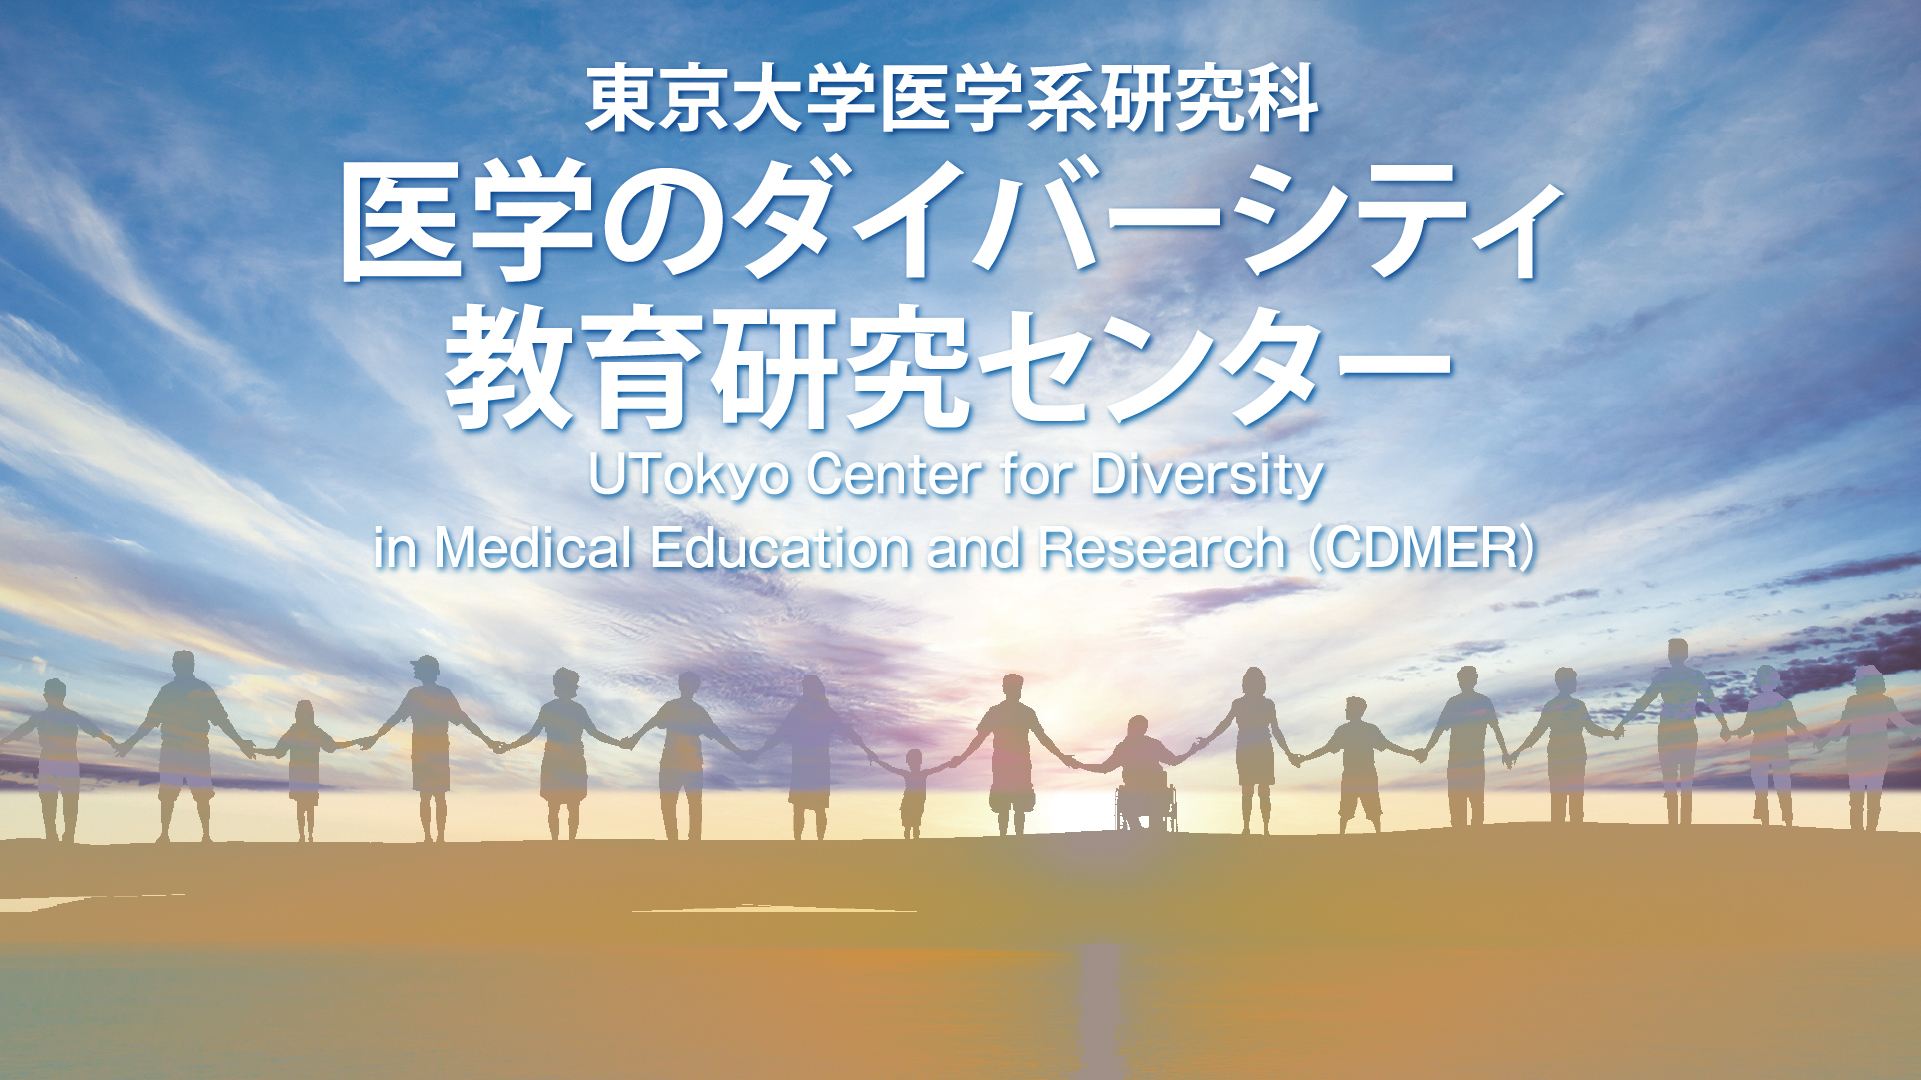 東京⼤学医学系研究科 医学のダイバーシティ教育研究センター UTokyo Center for Diversity in Medical Education and Research （CDMER）